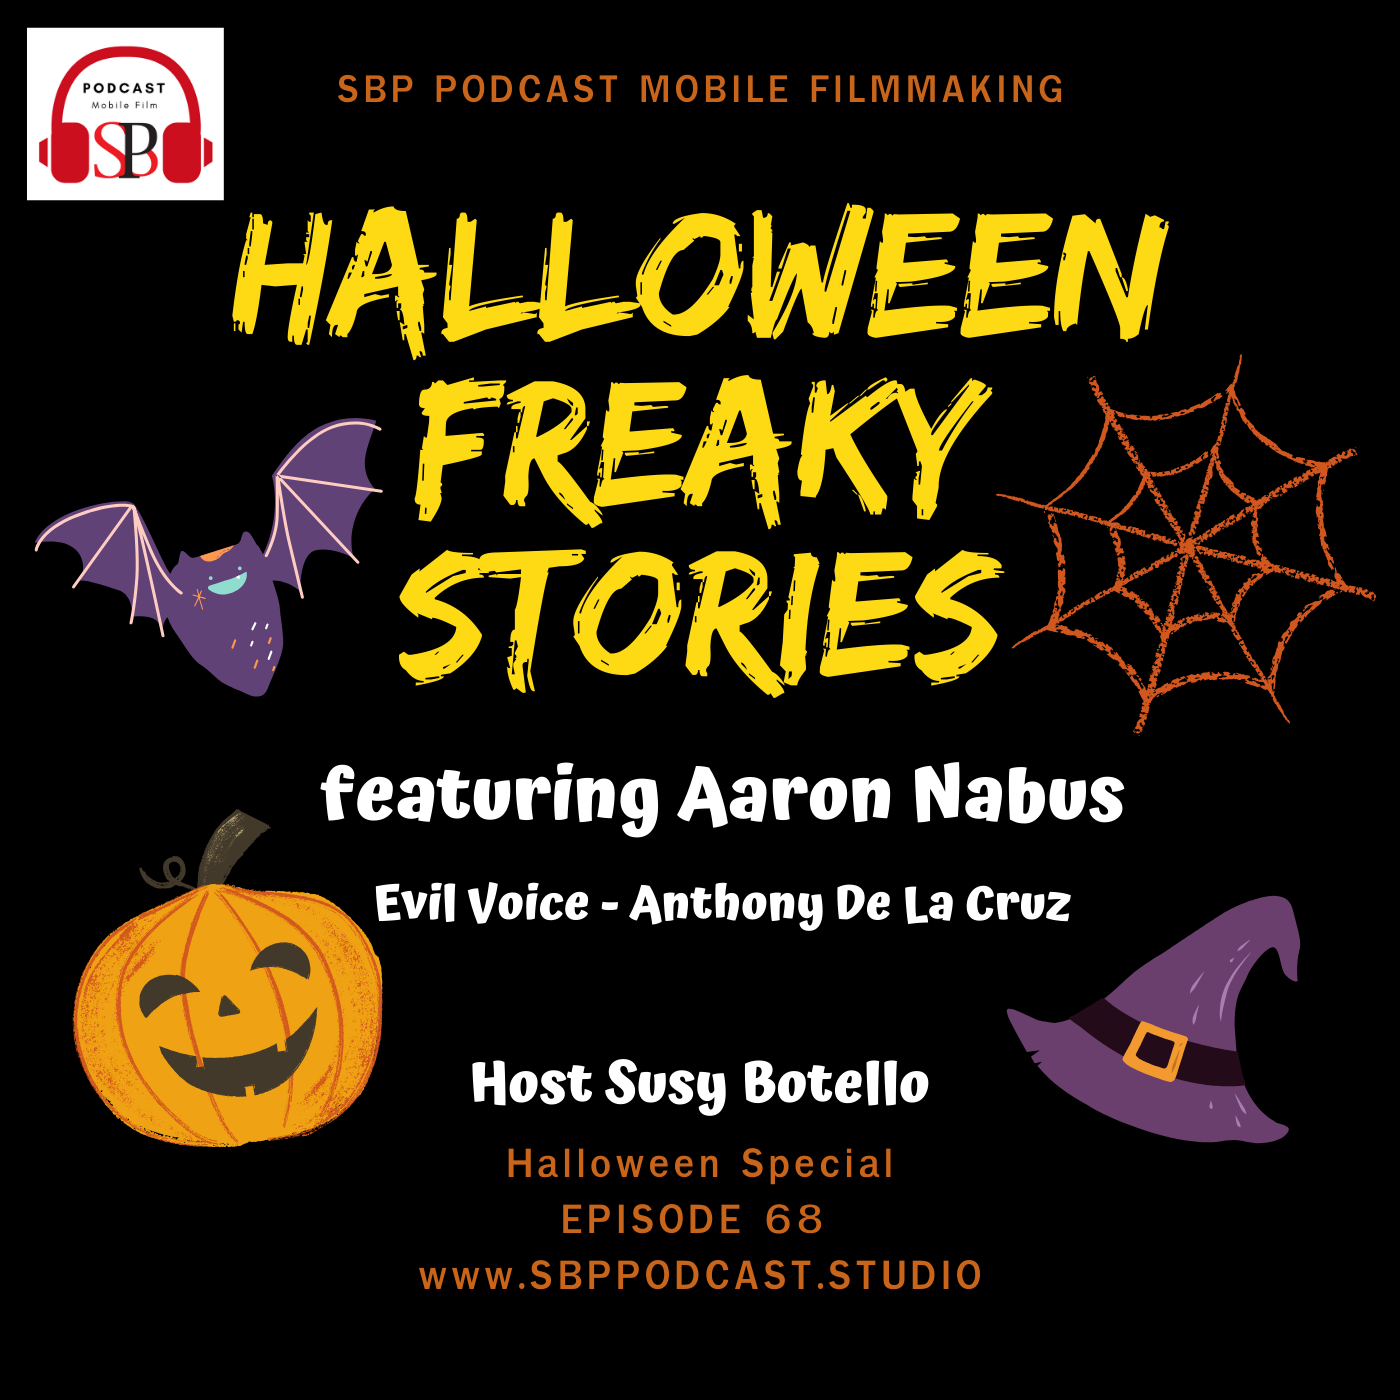 Halloween Freaky Stories with Aaron Nabus Image